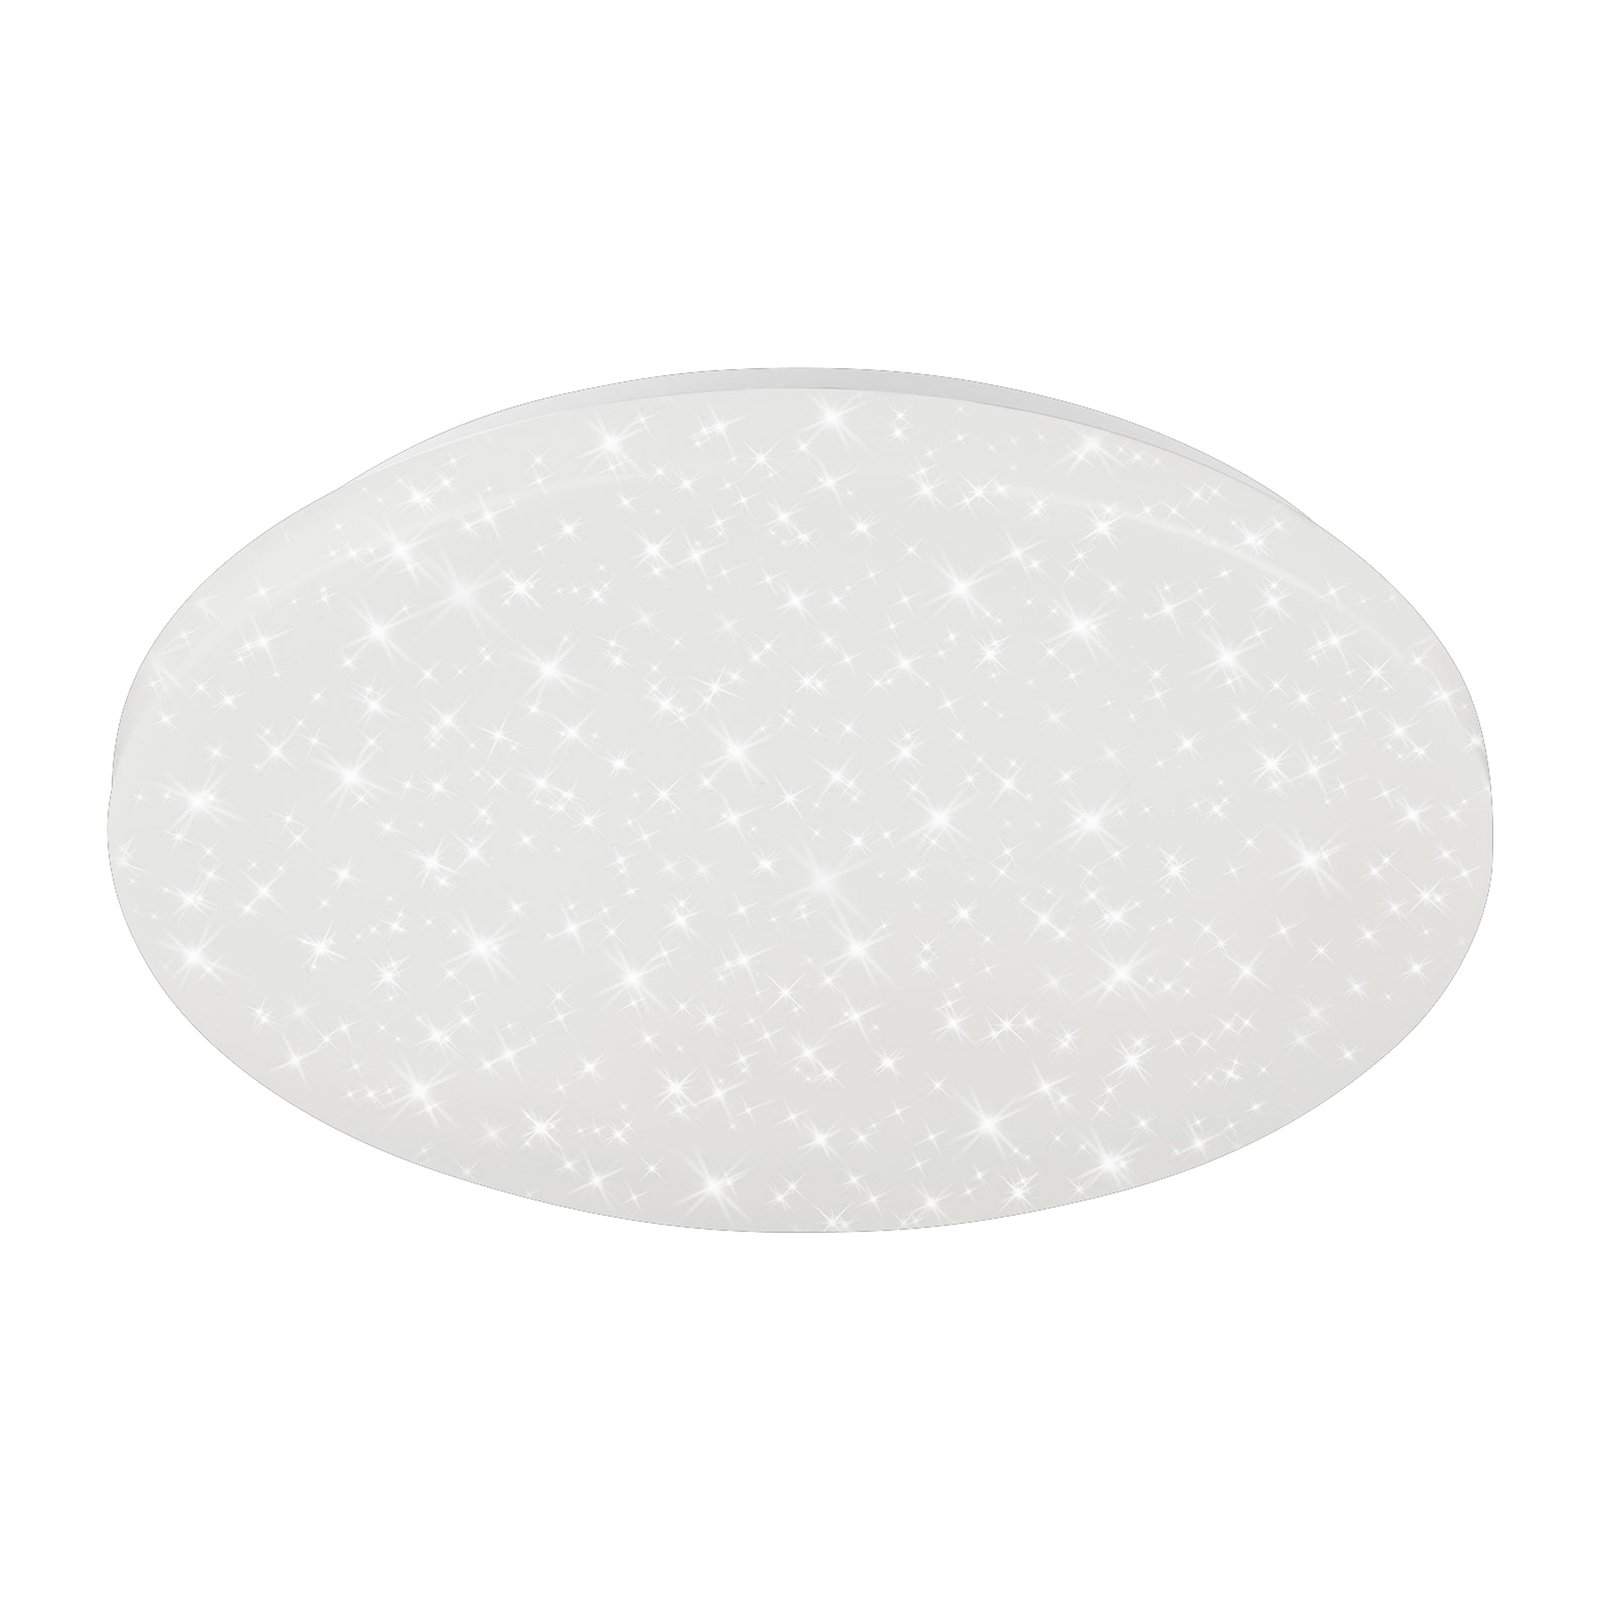 Brili Splash LED ceiling lamp, IP44, white, 4,000K